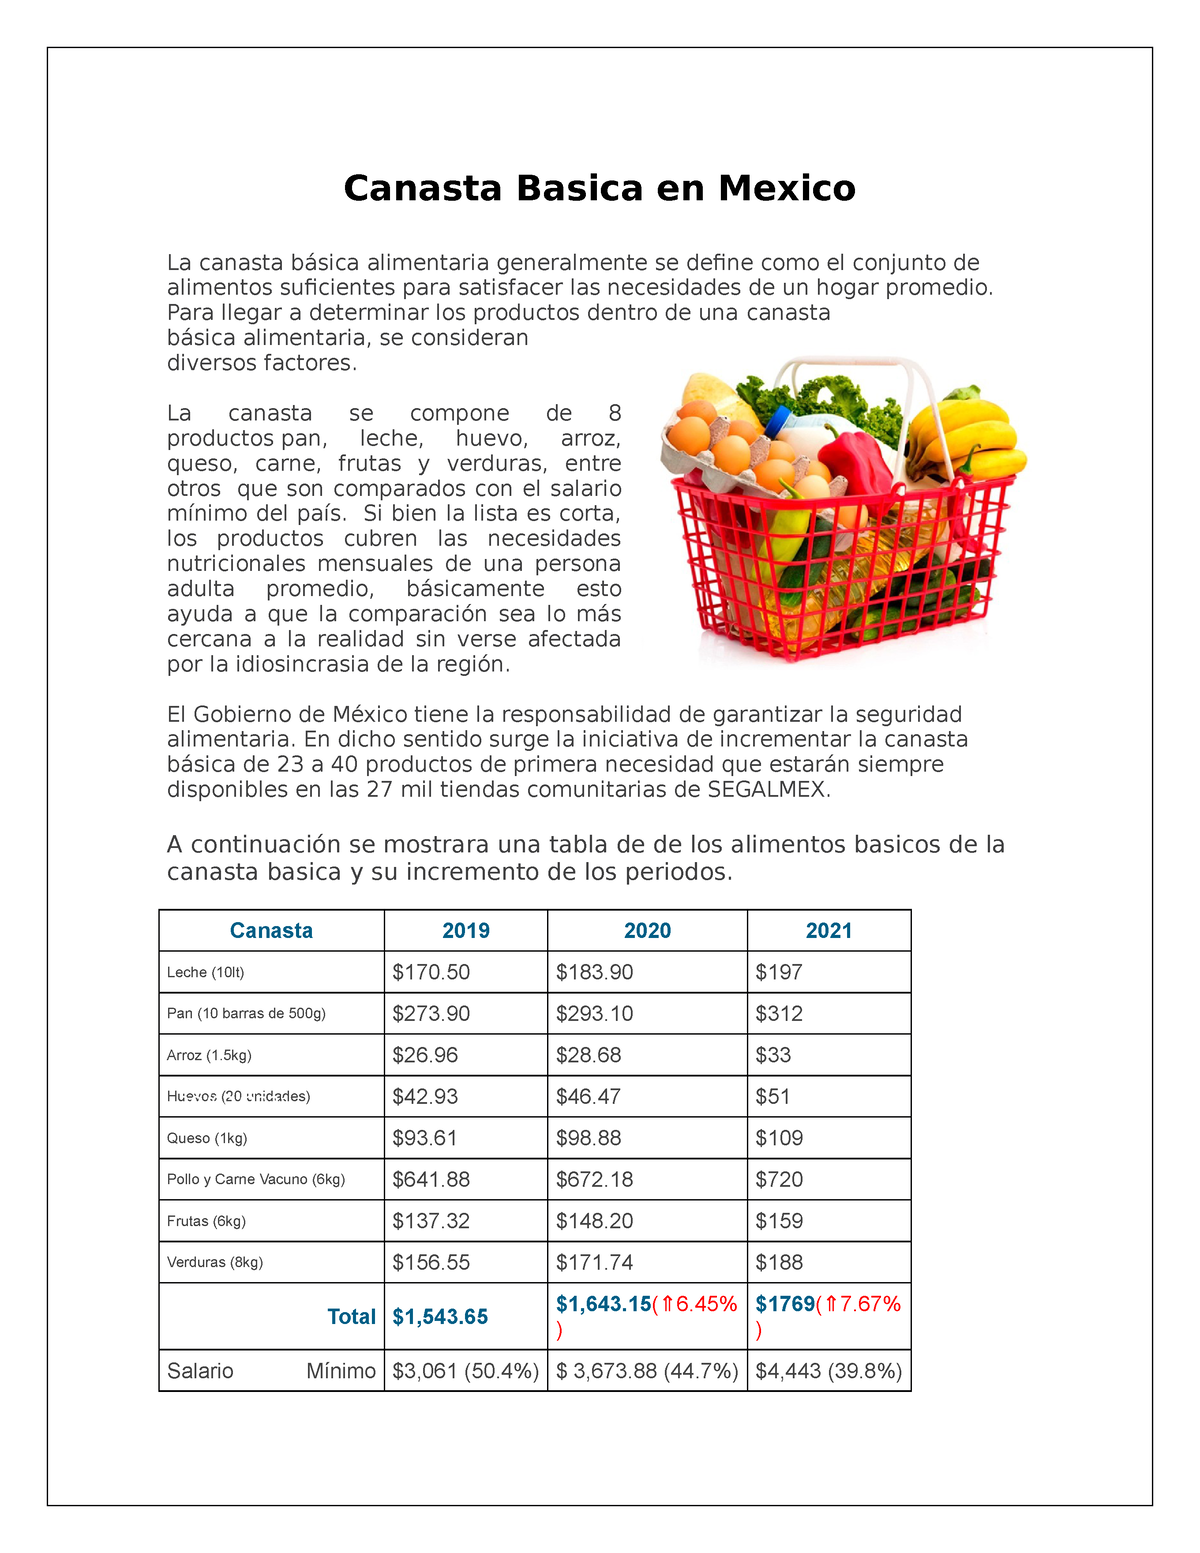 Estadistica de Canasta Basica en Mexico Canasta Basica en Mexico La canasta básica alimentaria